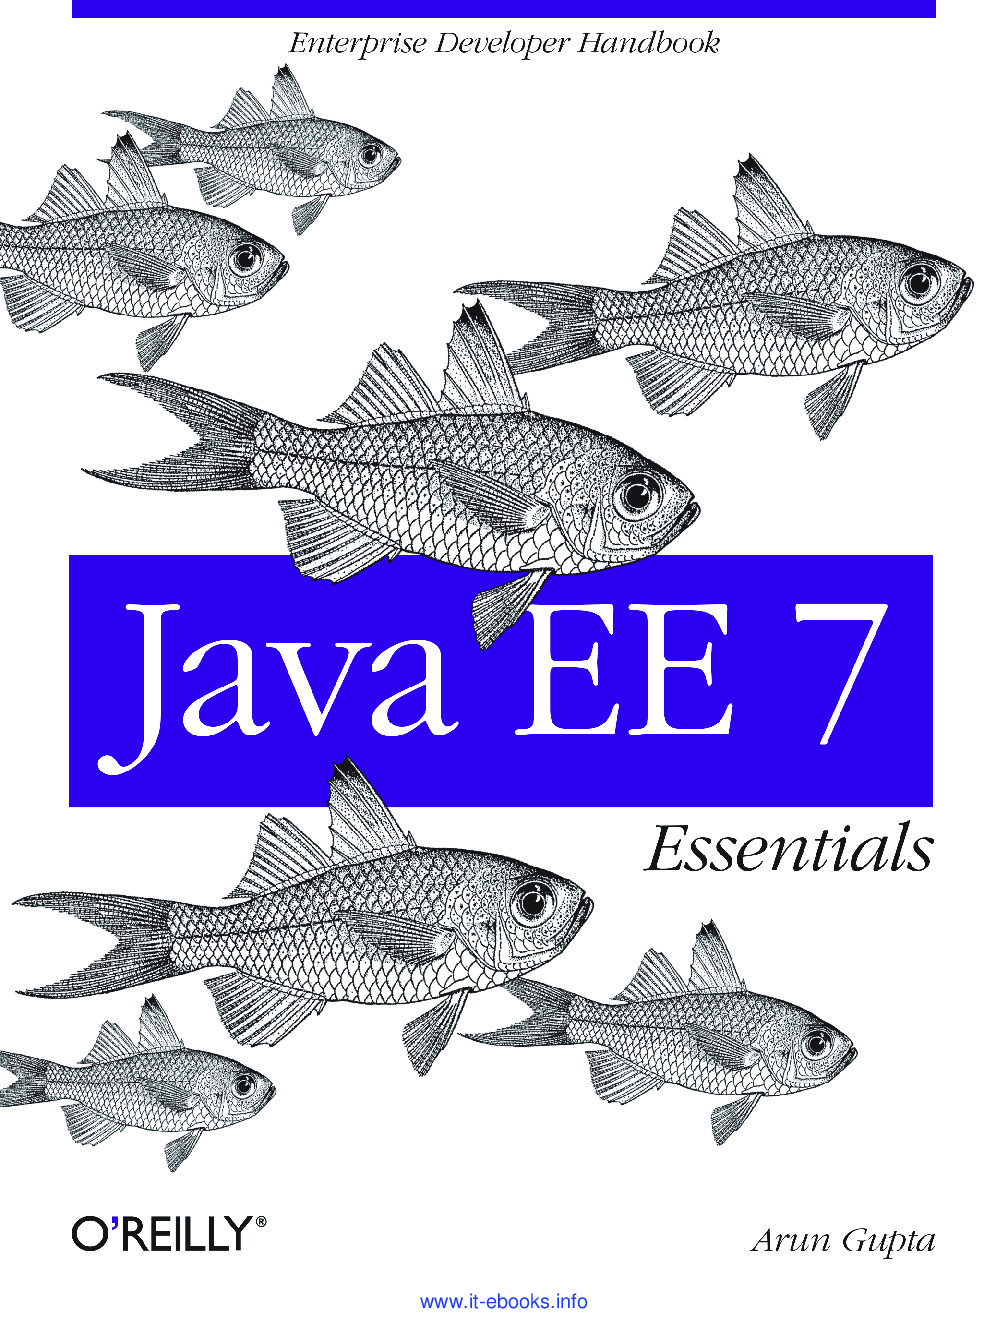 [JAVA][Java EE 7 Essentials]